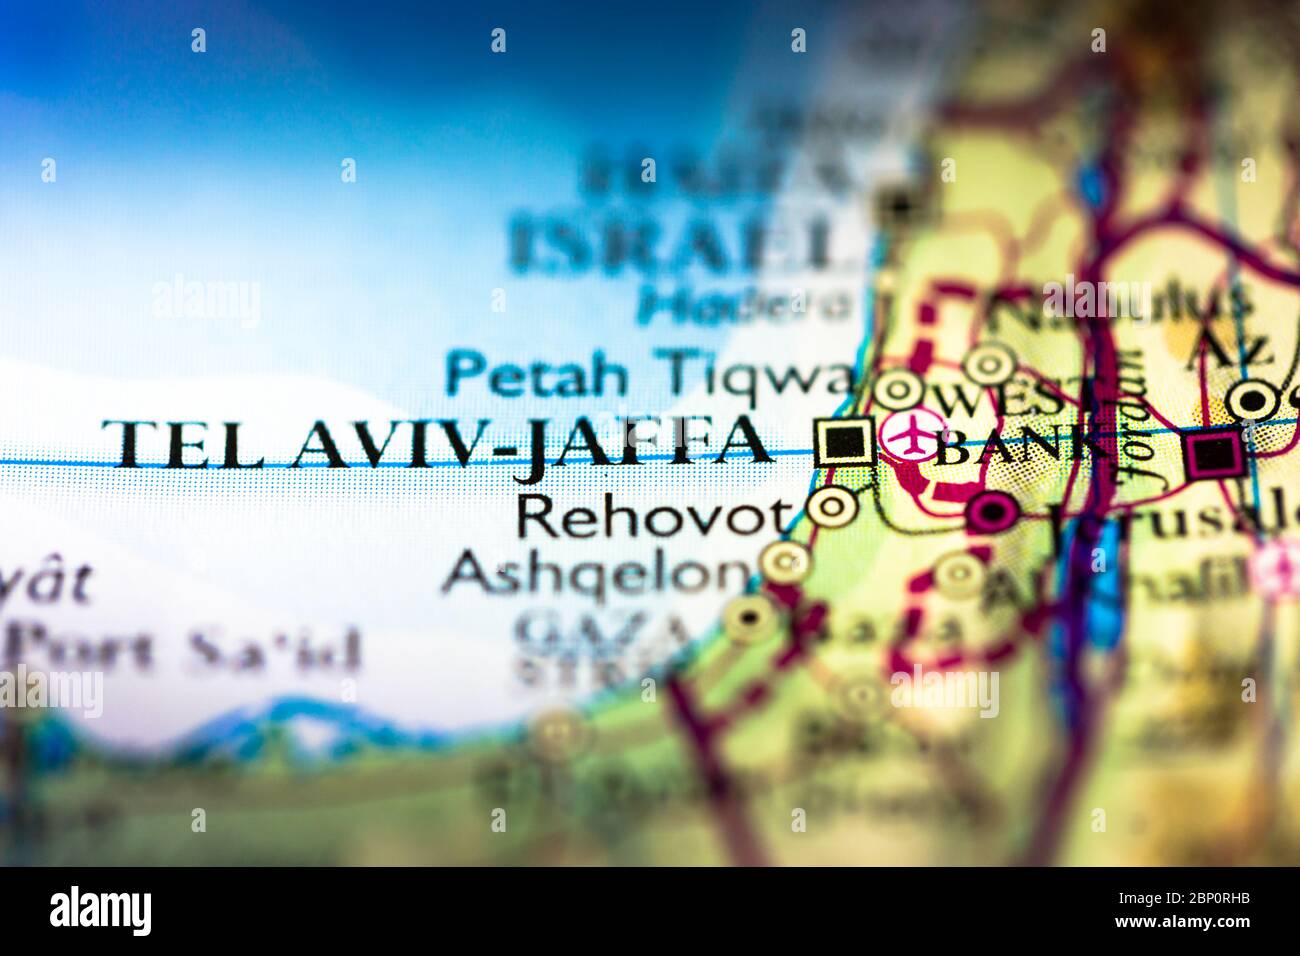 Profundidad de campo reducida se centra en la ubicación del mapa geográfico del continente asiático de Jaffa Israel de Tel Aviv en el atlas Foto de stock